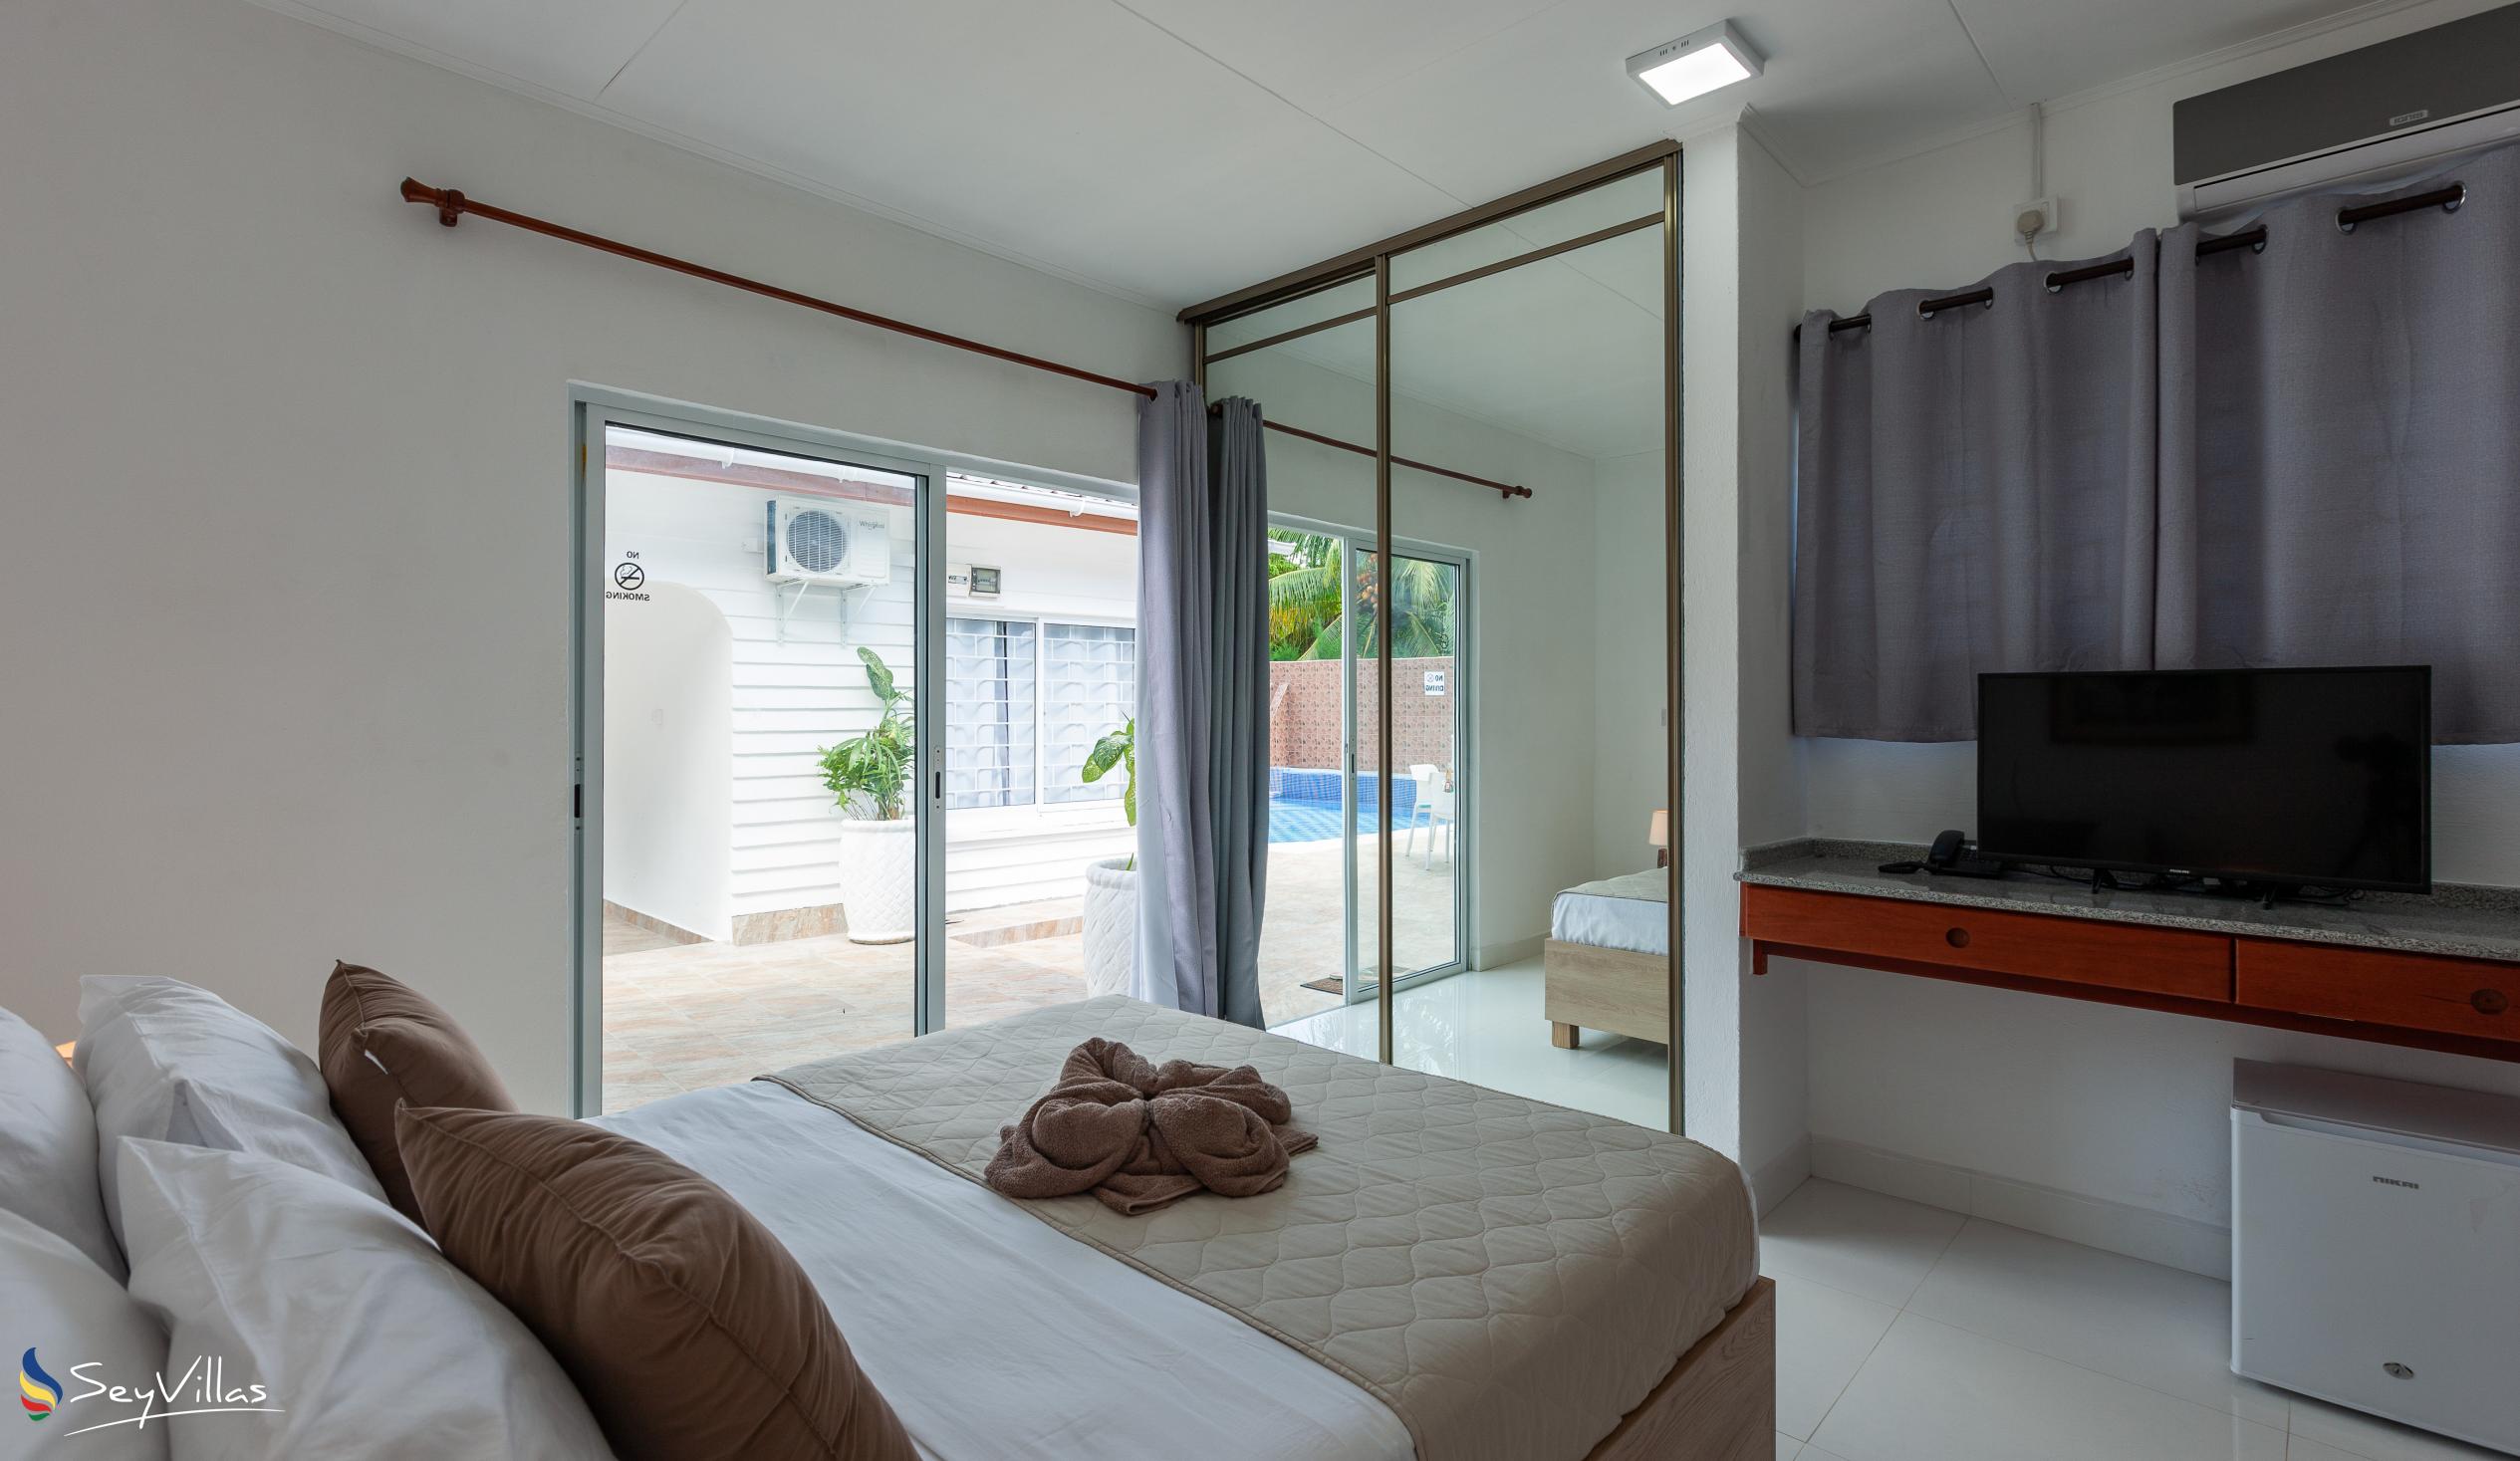 Foto 25: Hotel Plein Soleil - Deluxe Zimmer mit Queensize-Bett - Praslin (Seychellen)